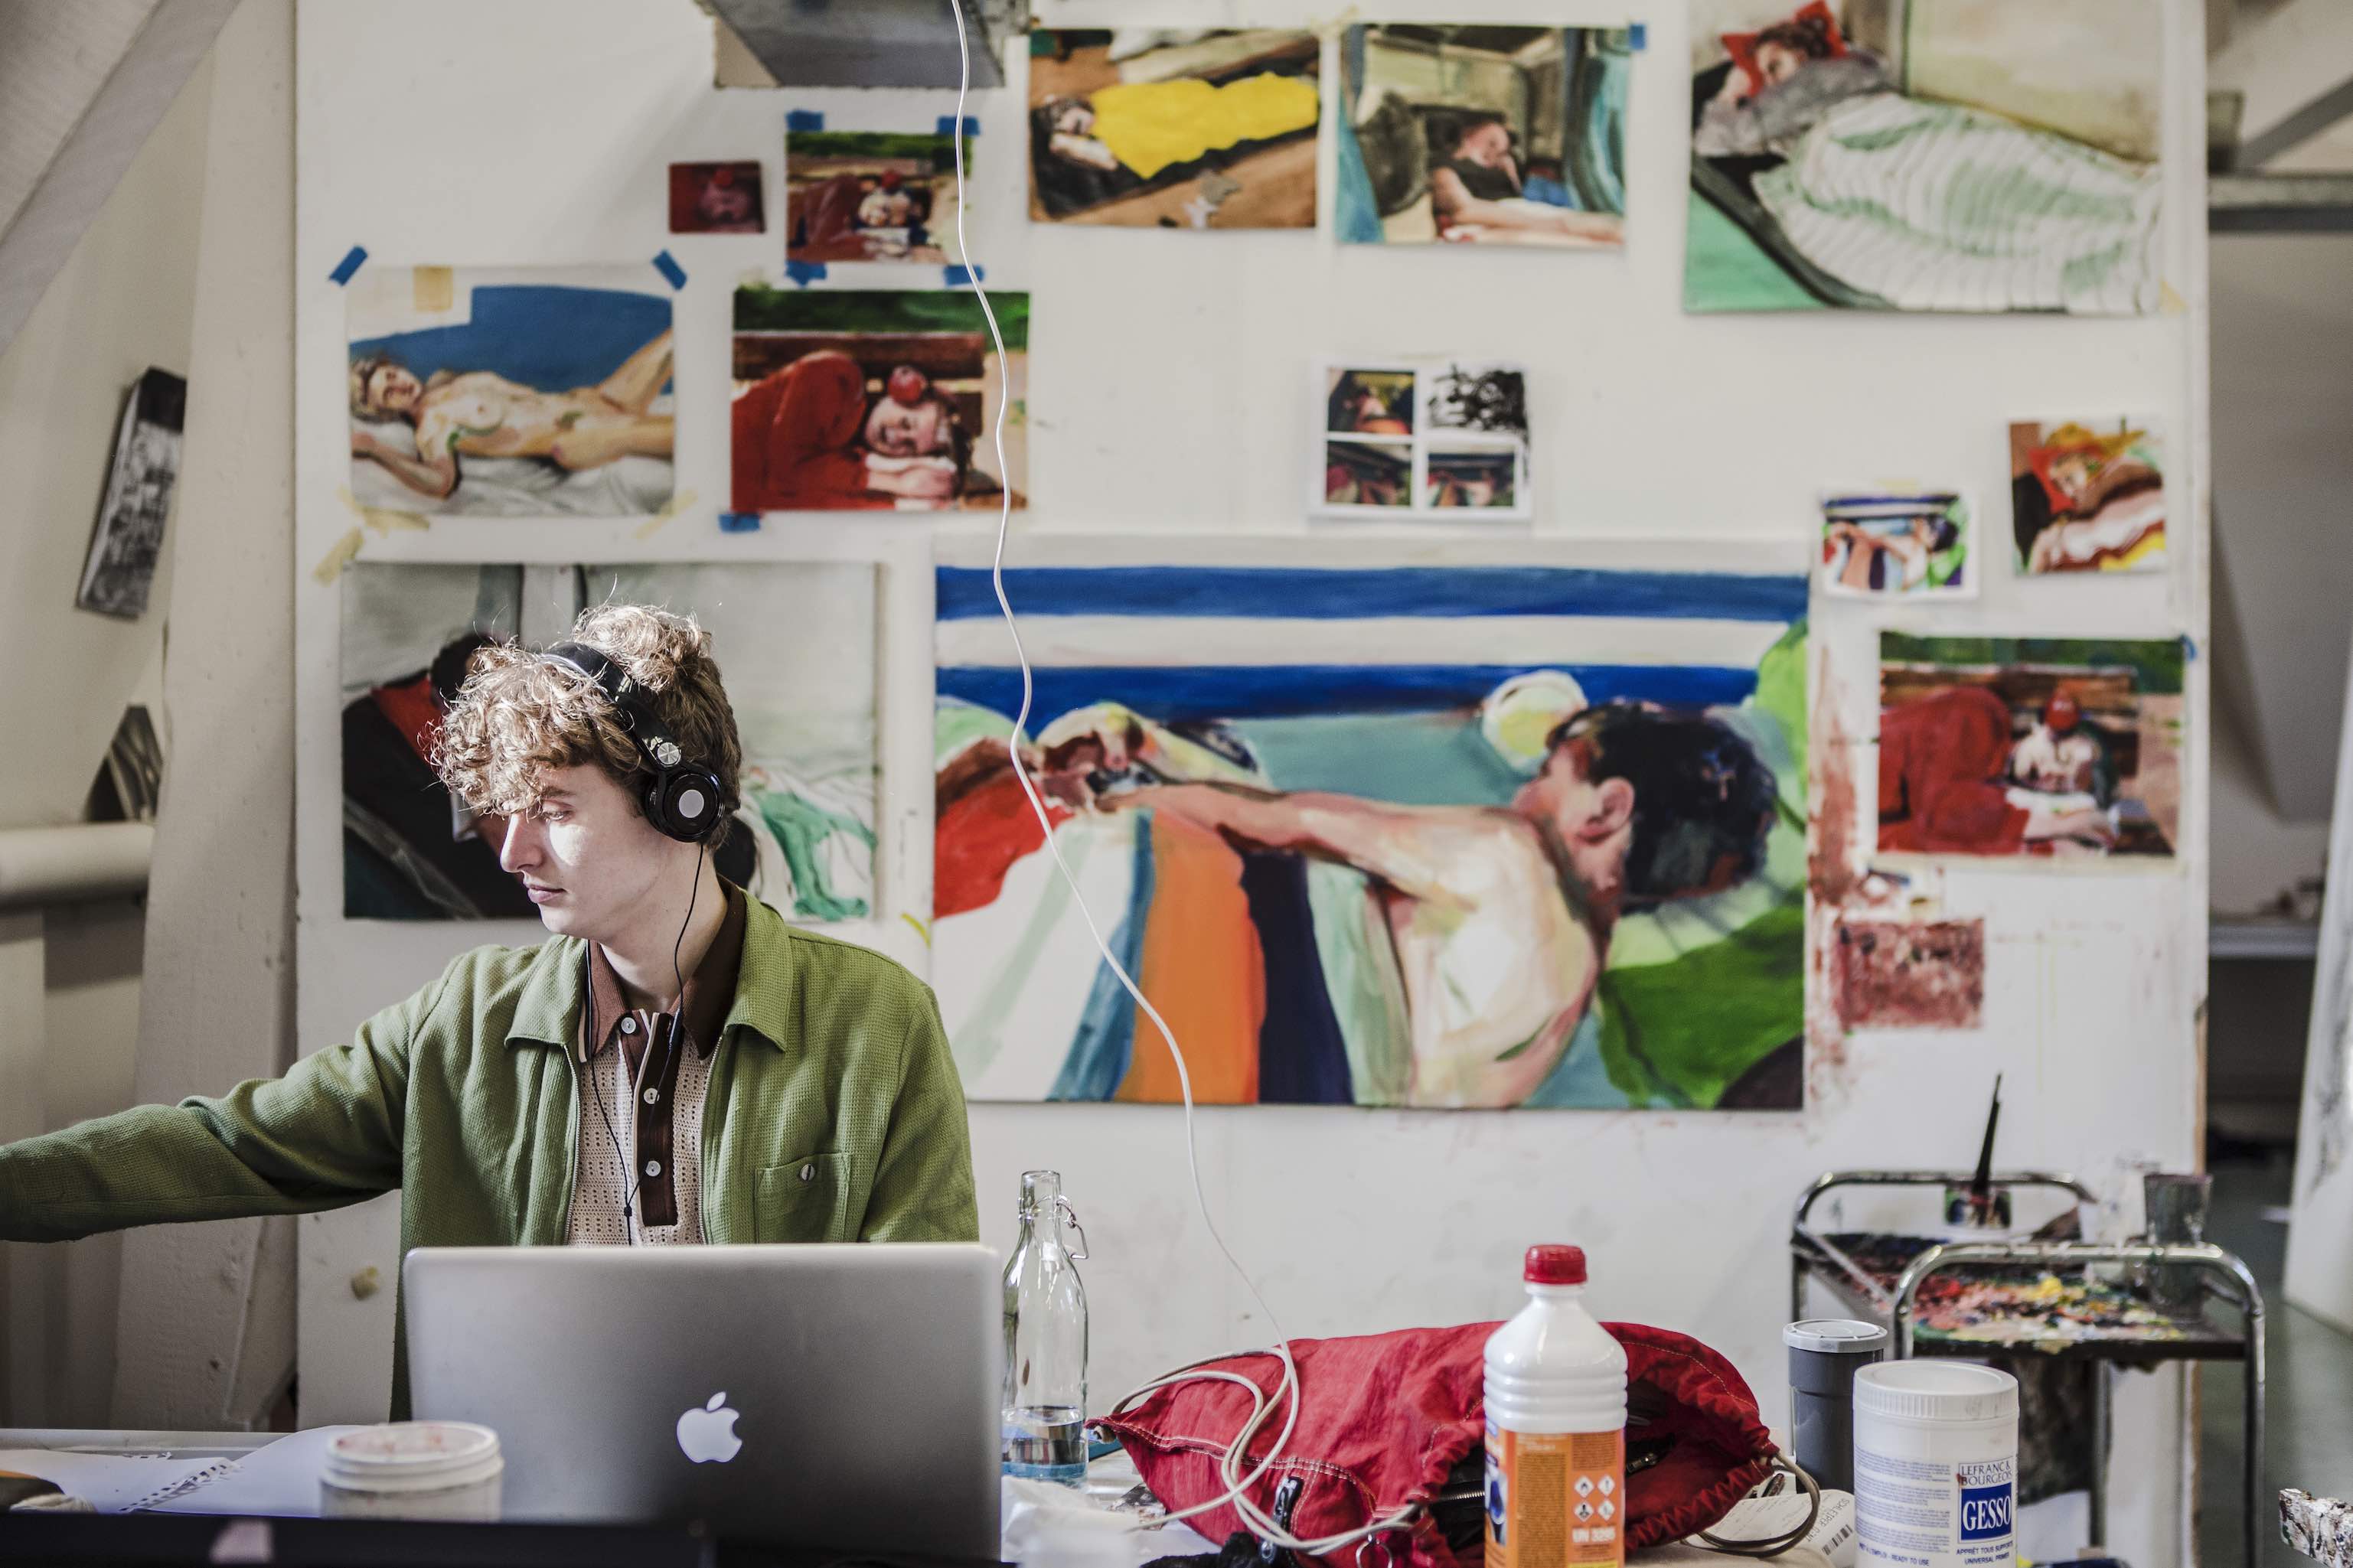 Pieter zitten met koptelefoon aan het werk voor muur met schilderijen van liggende mensen